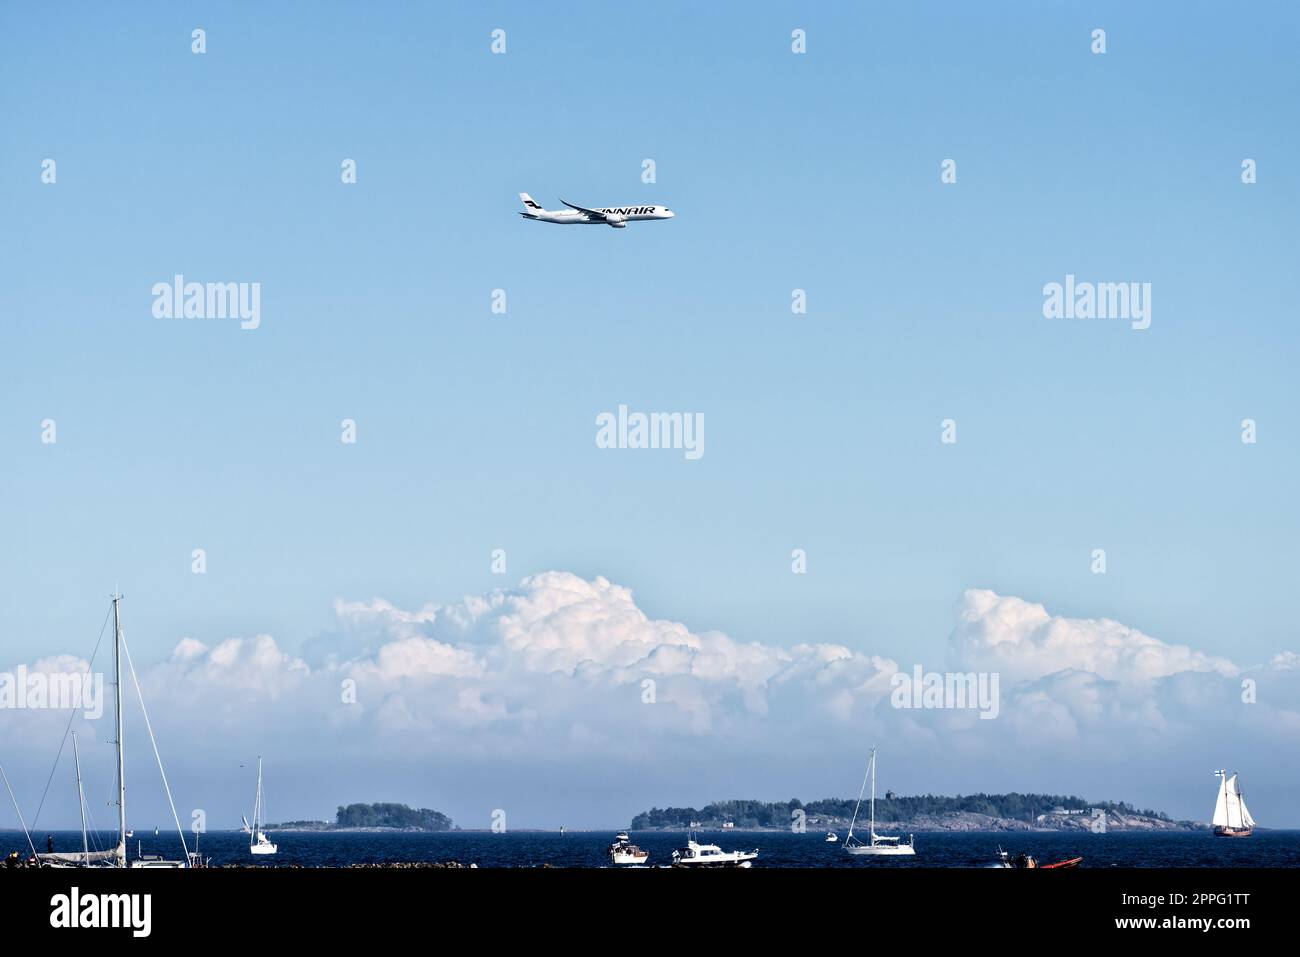 Helsinki, Finnland - 9. Juni 2017: Finnair Airbus A350 XWB-Flugzeug fliegt in extrem niedriger Höhe über der Inselgruppe von Helsinki mit Booten auf der for Stockfoto